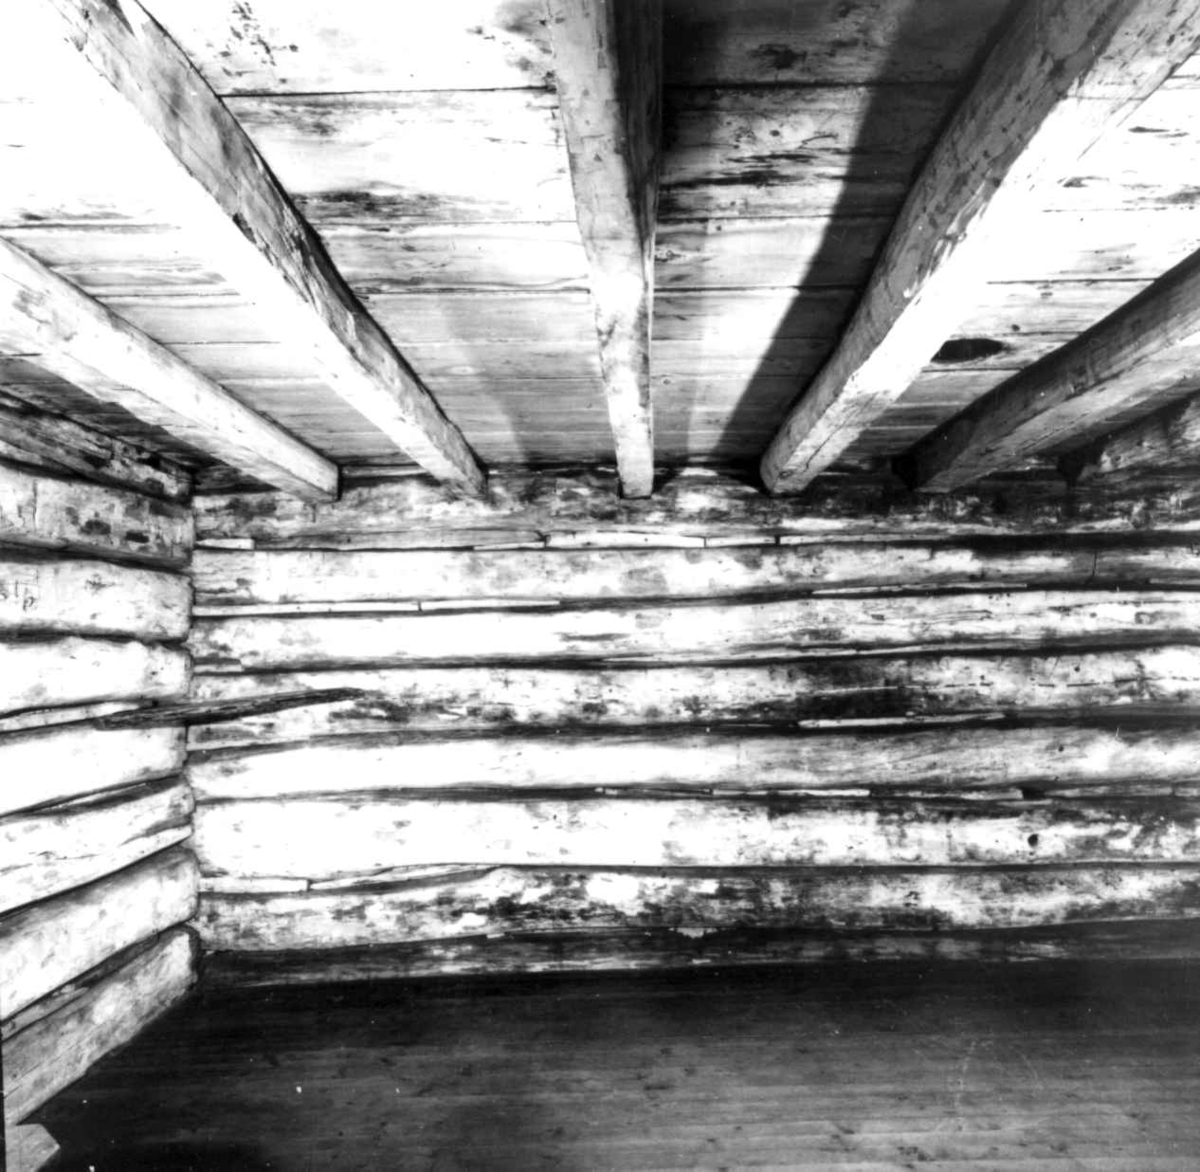 Pionerhytta fra Kindred i North Dakota, USA. Interiør. Langveggen med døren. Fotografert på Norsk Folkemuseum i september 1972, før riving og flytting til Hedmarksmuseet. Møblene er flyttet ut.